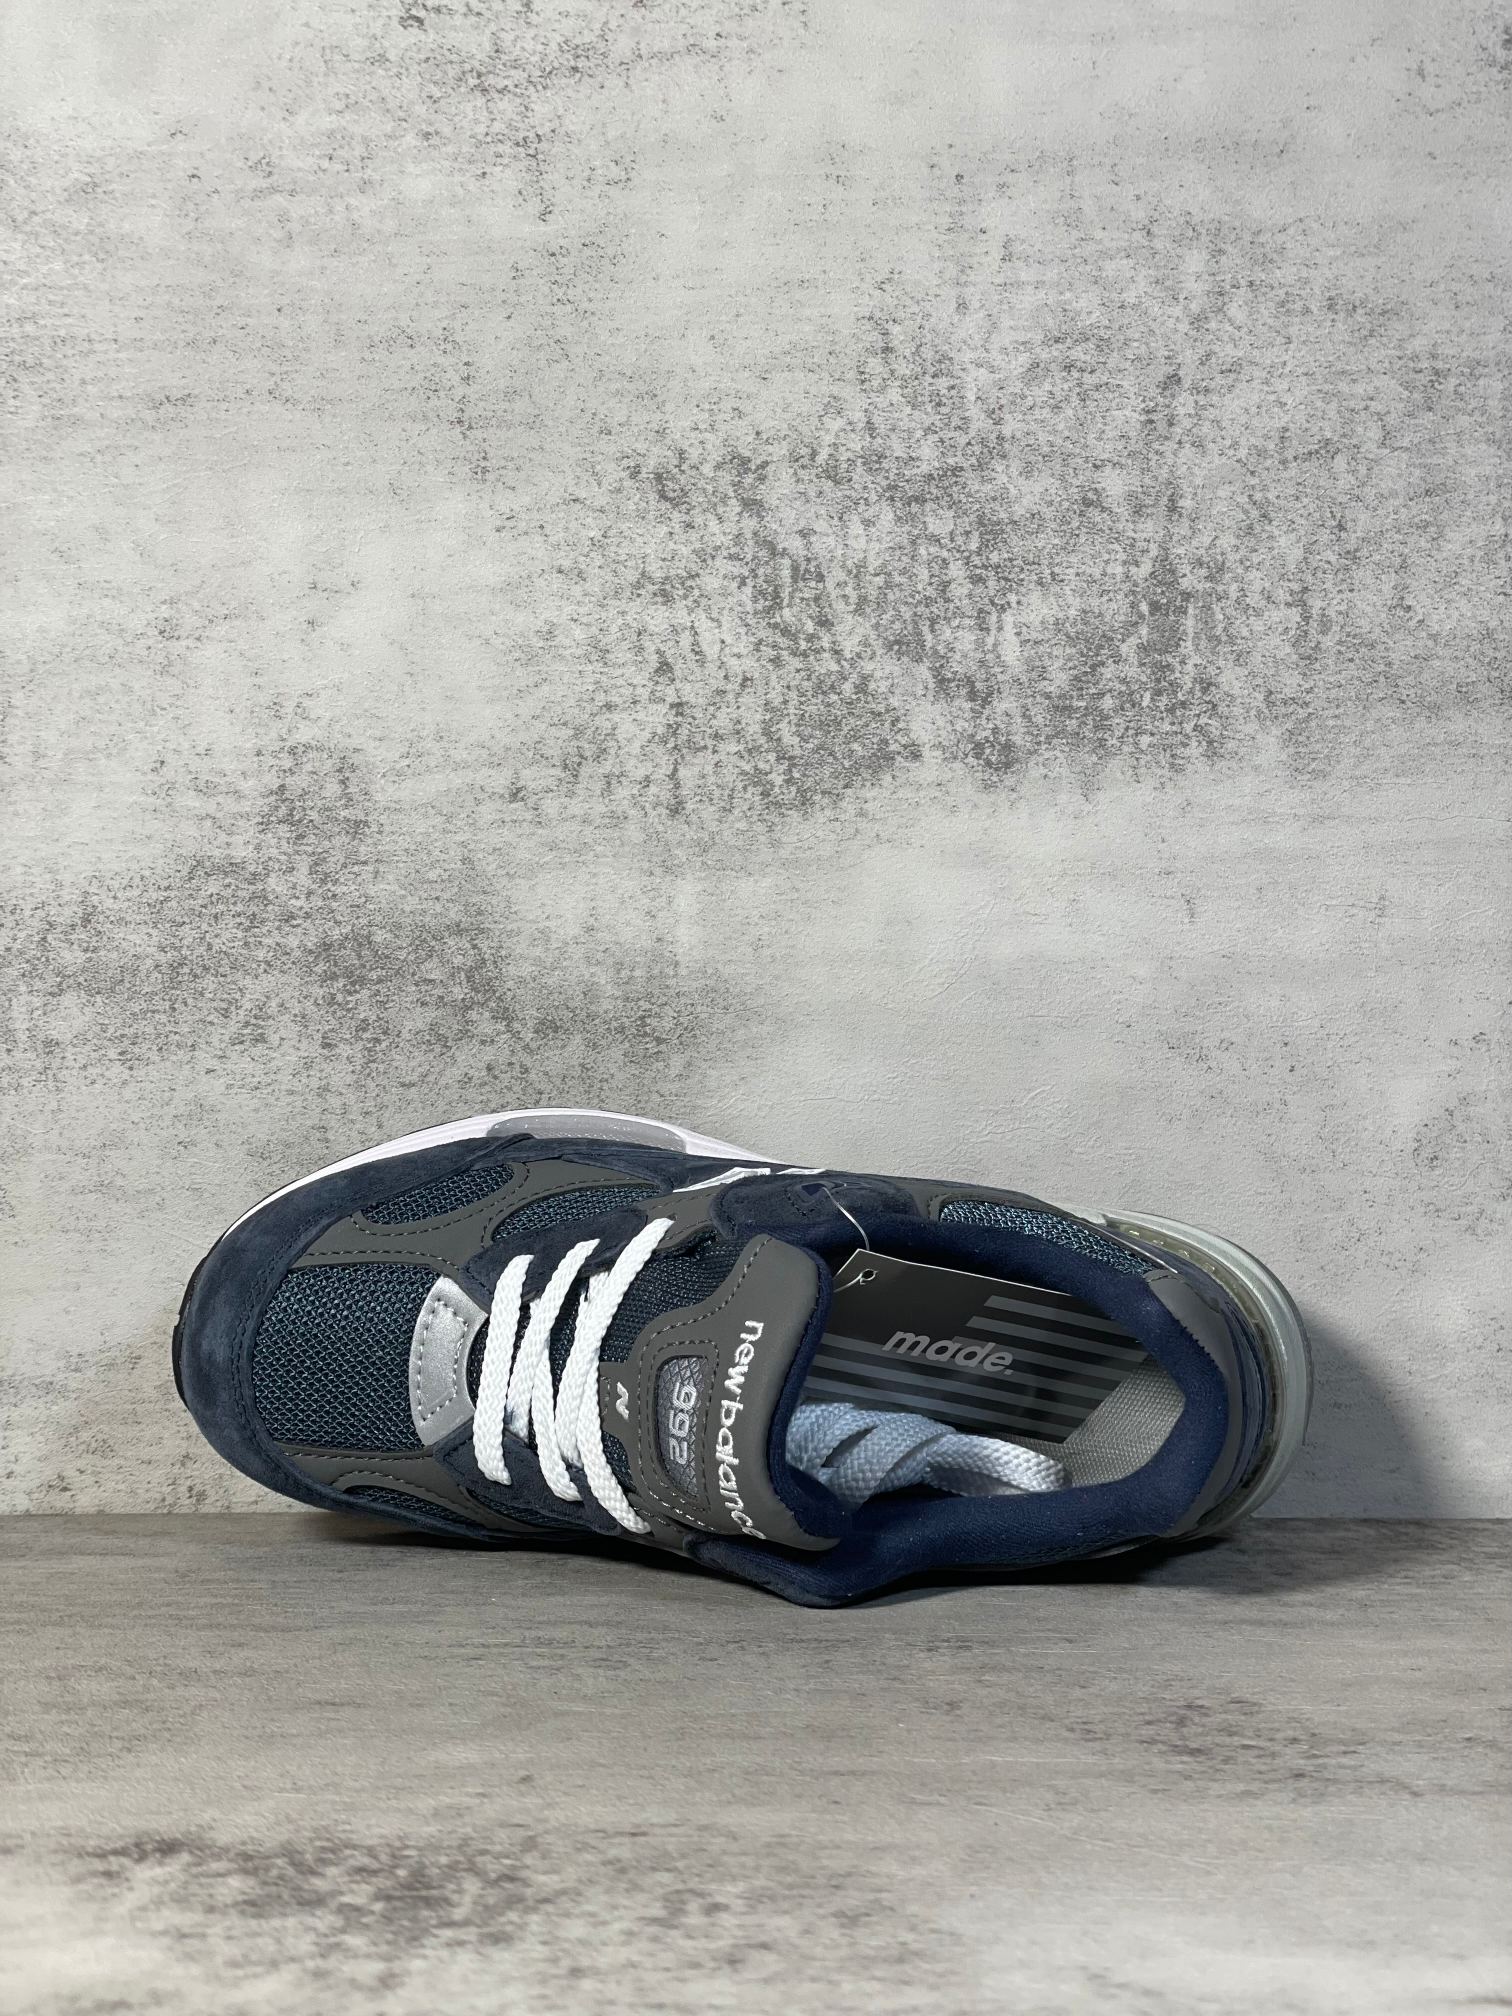 NB992联名款M992GG外贸纯原版全码出货海军蓝全市场唯一原鞋开发全鞋使用原材料打造大底单独开模打造